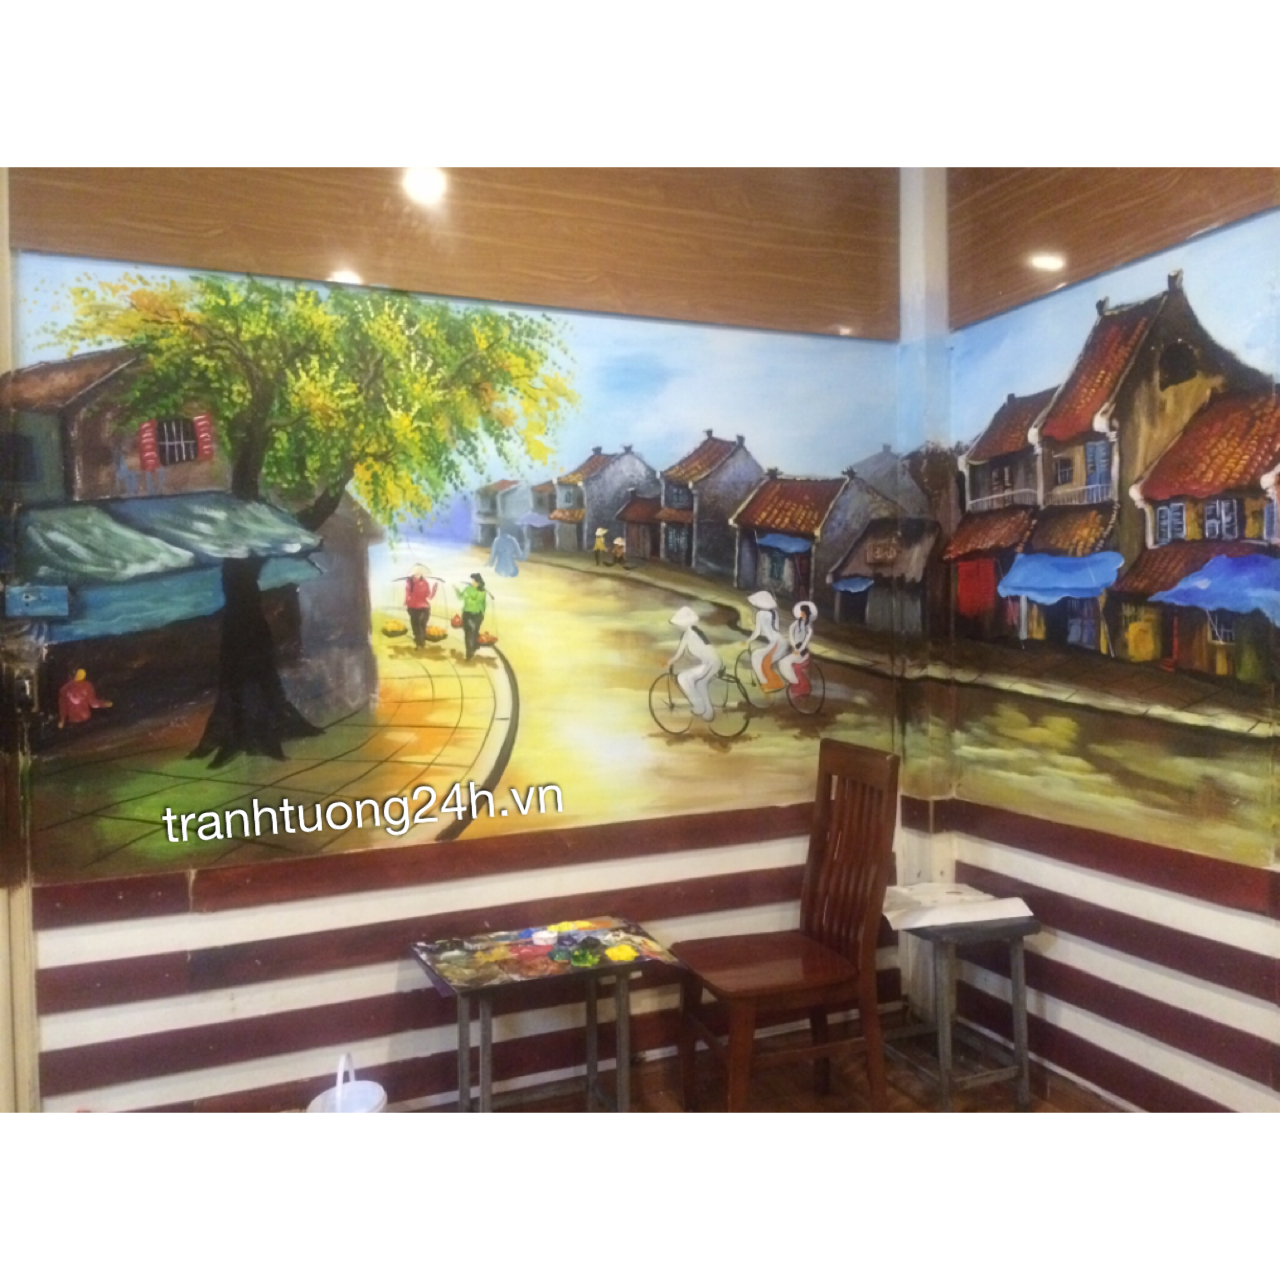 Vẽ tranh tường nhà hàng Ngỗng 9 món tại Số 1 Đặng Thái Ân